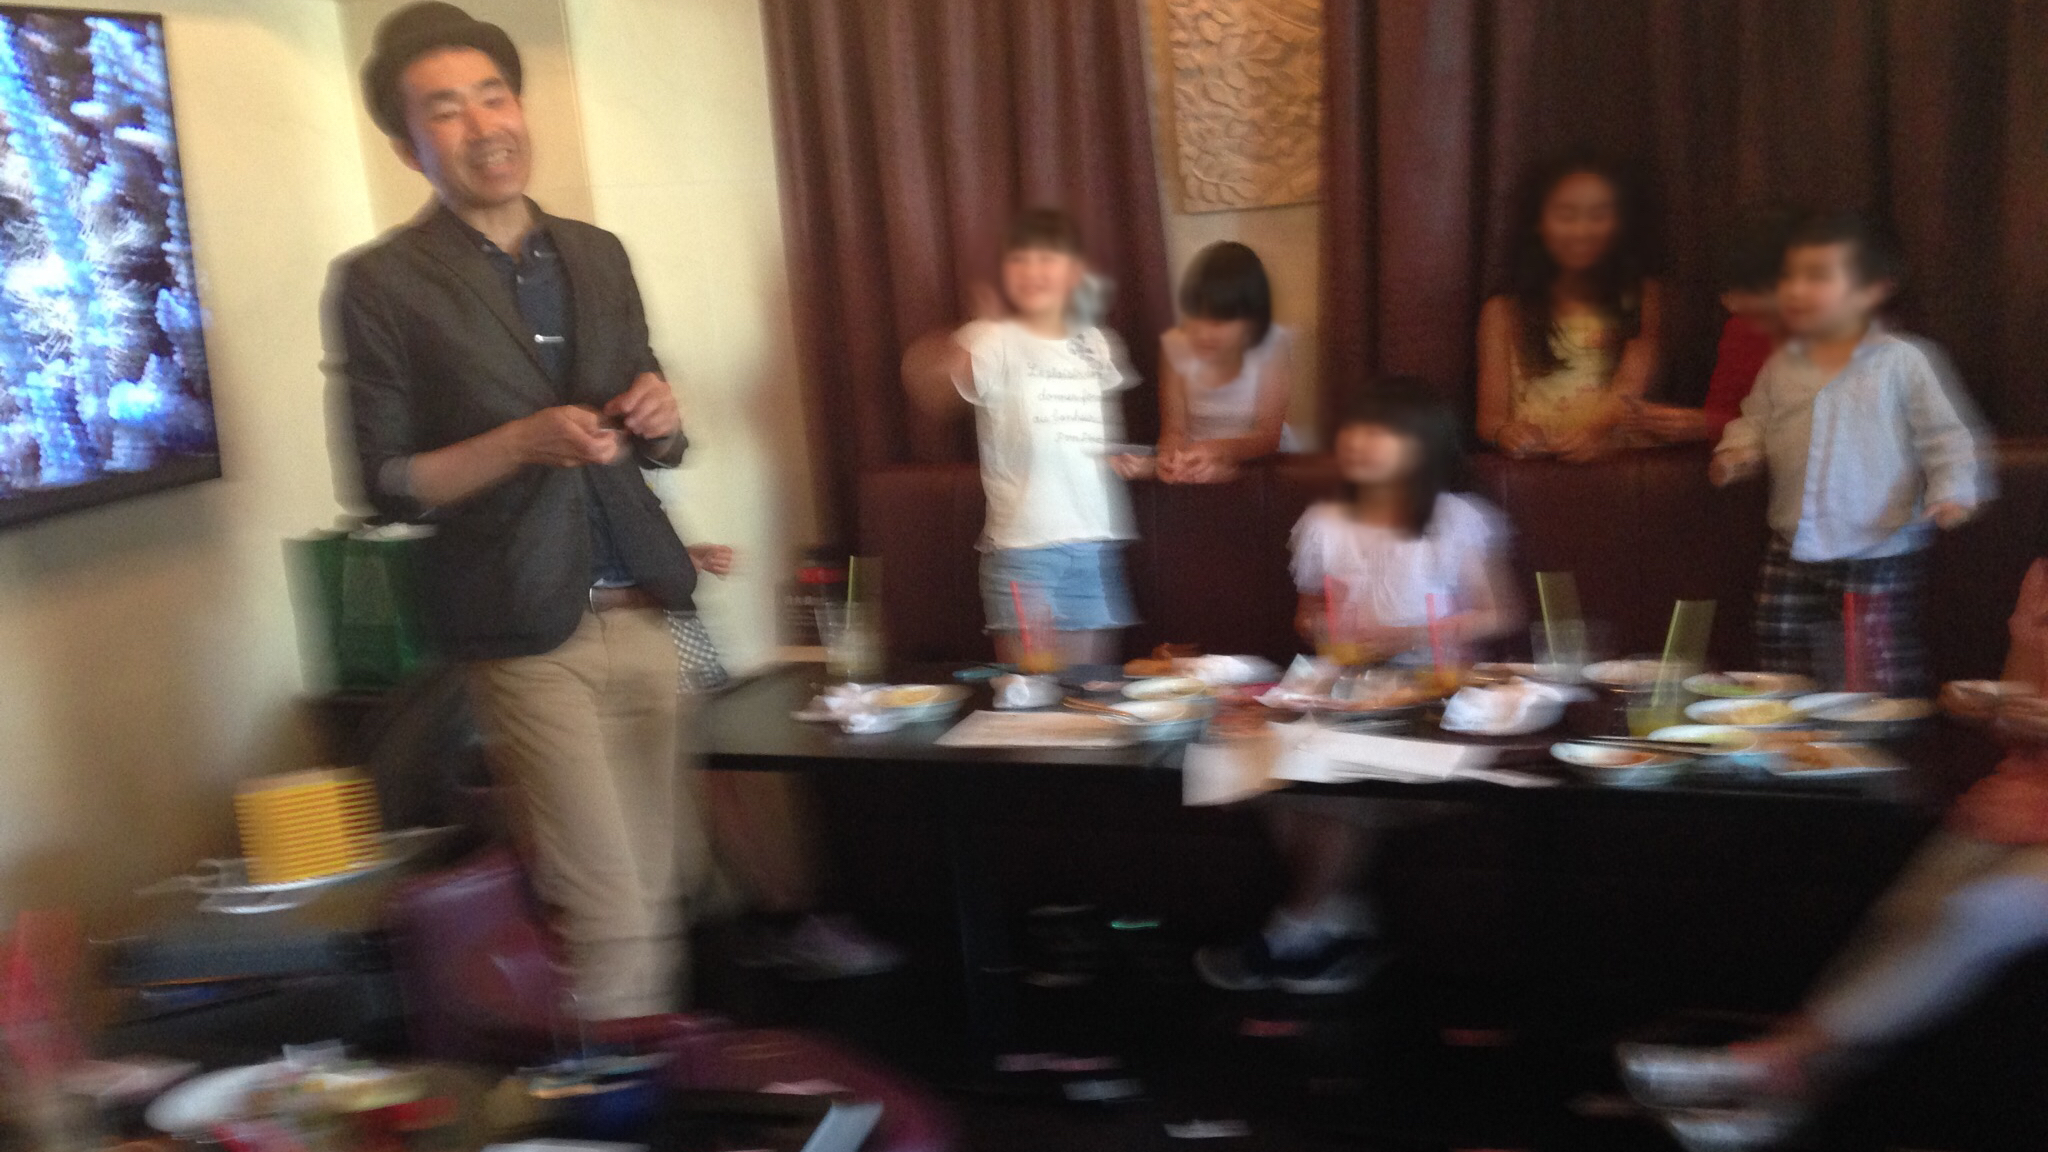 全員参加のカードマジック 子供のお誕生日会に出張マジシャンマジックショー at パセラリゾーツ六本木店